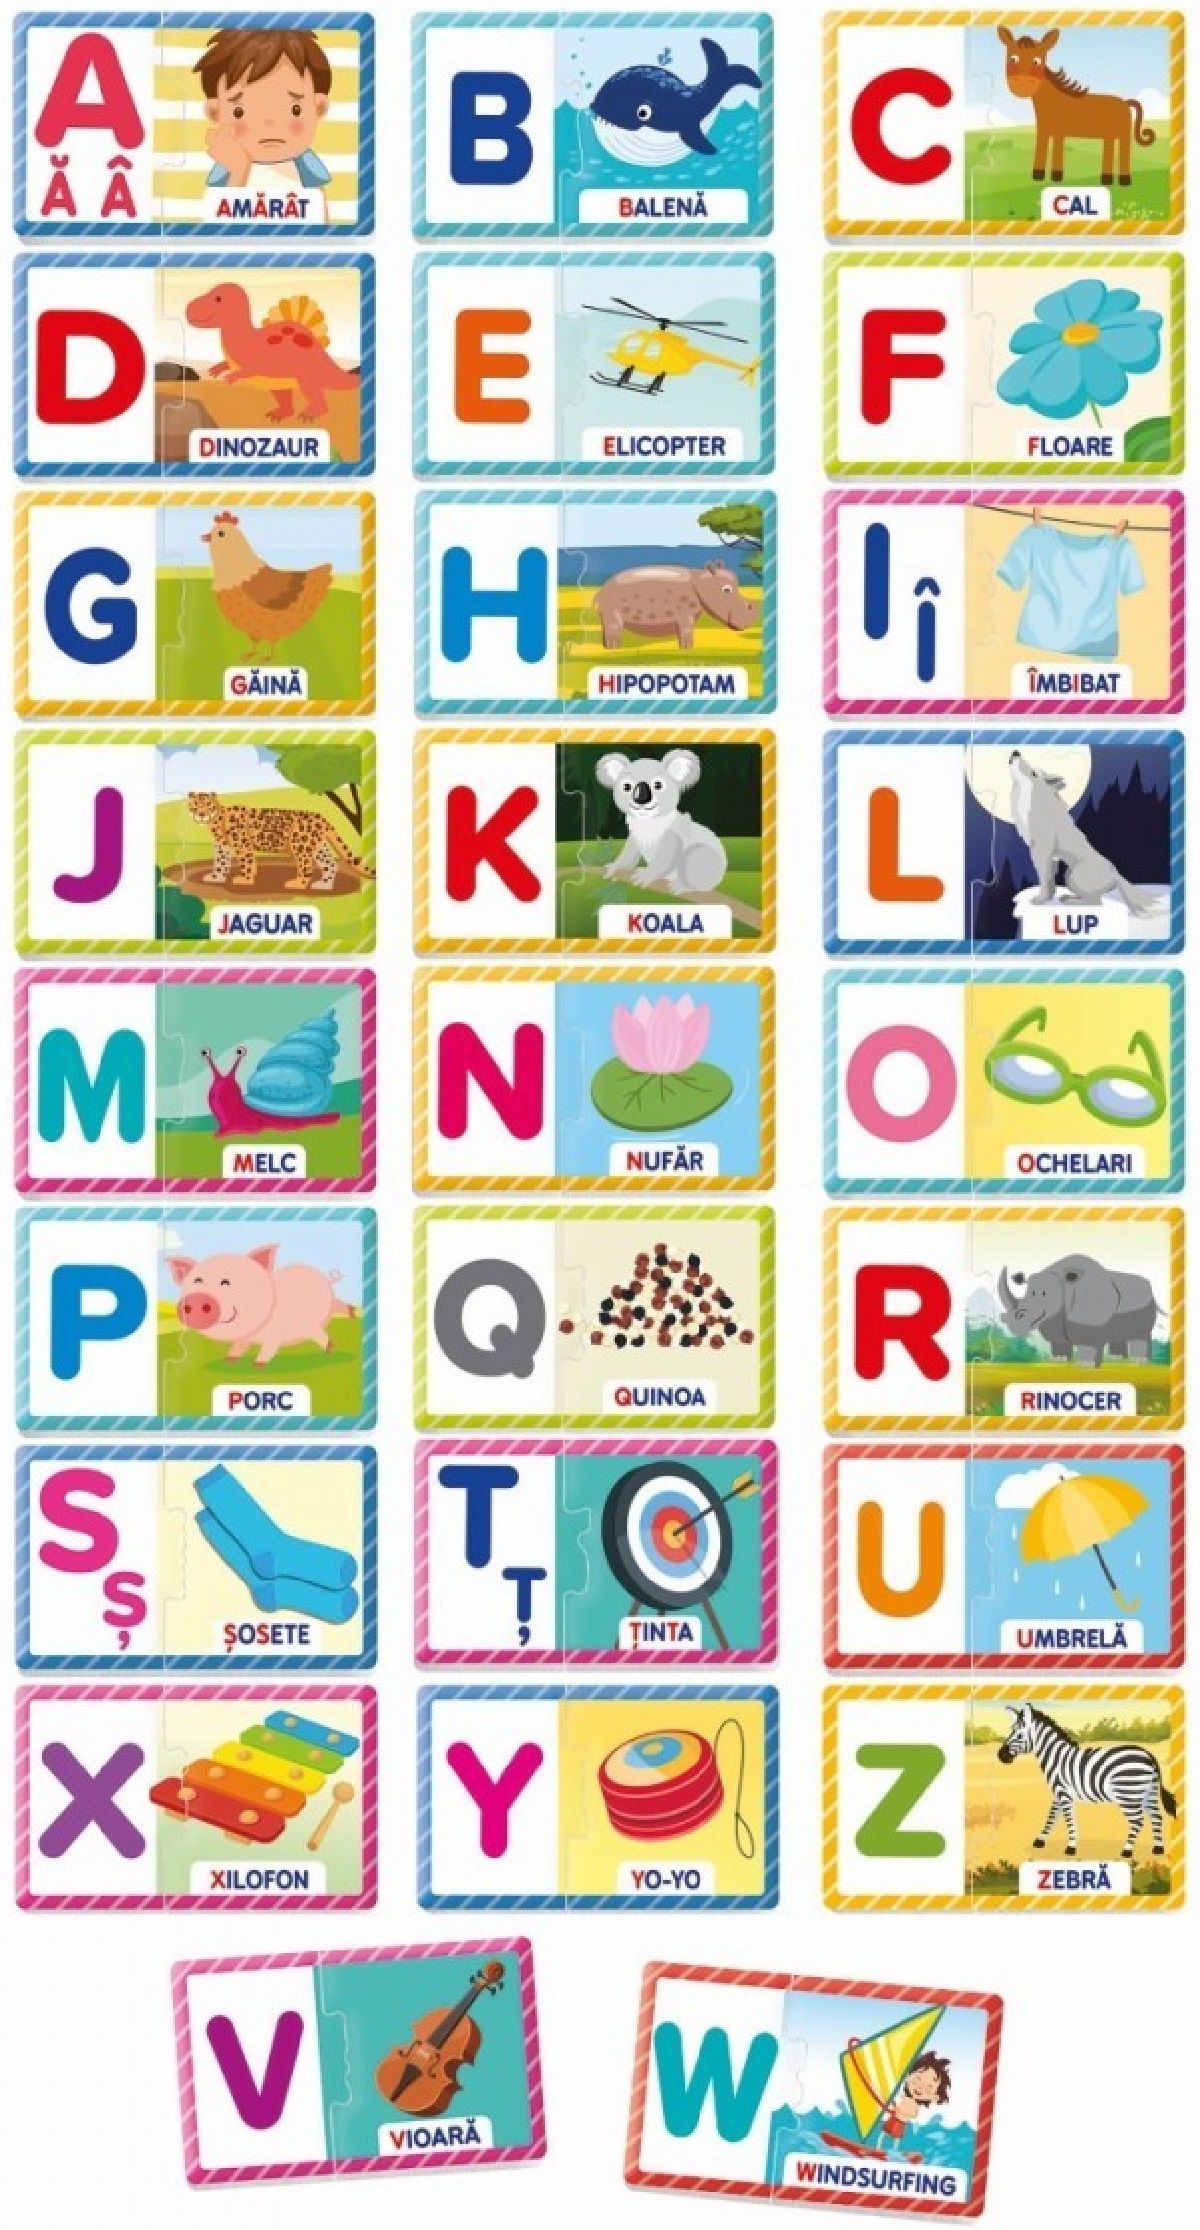 Joc educativ Agerino: De la A la Z. Invatarea ordinii alfabetice si a cuvintelor